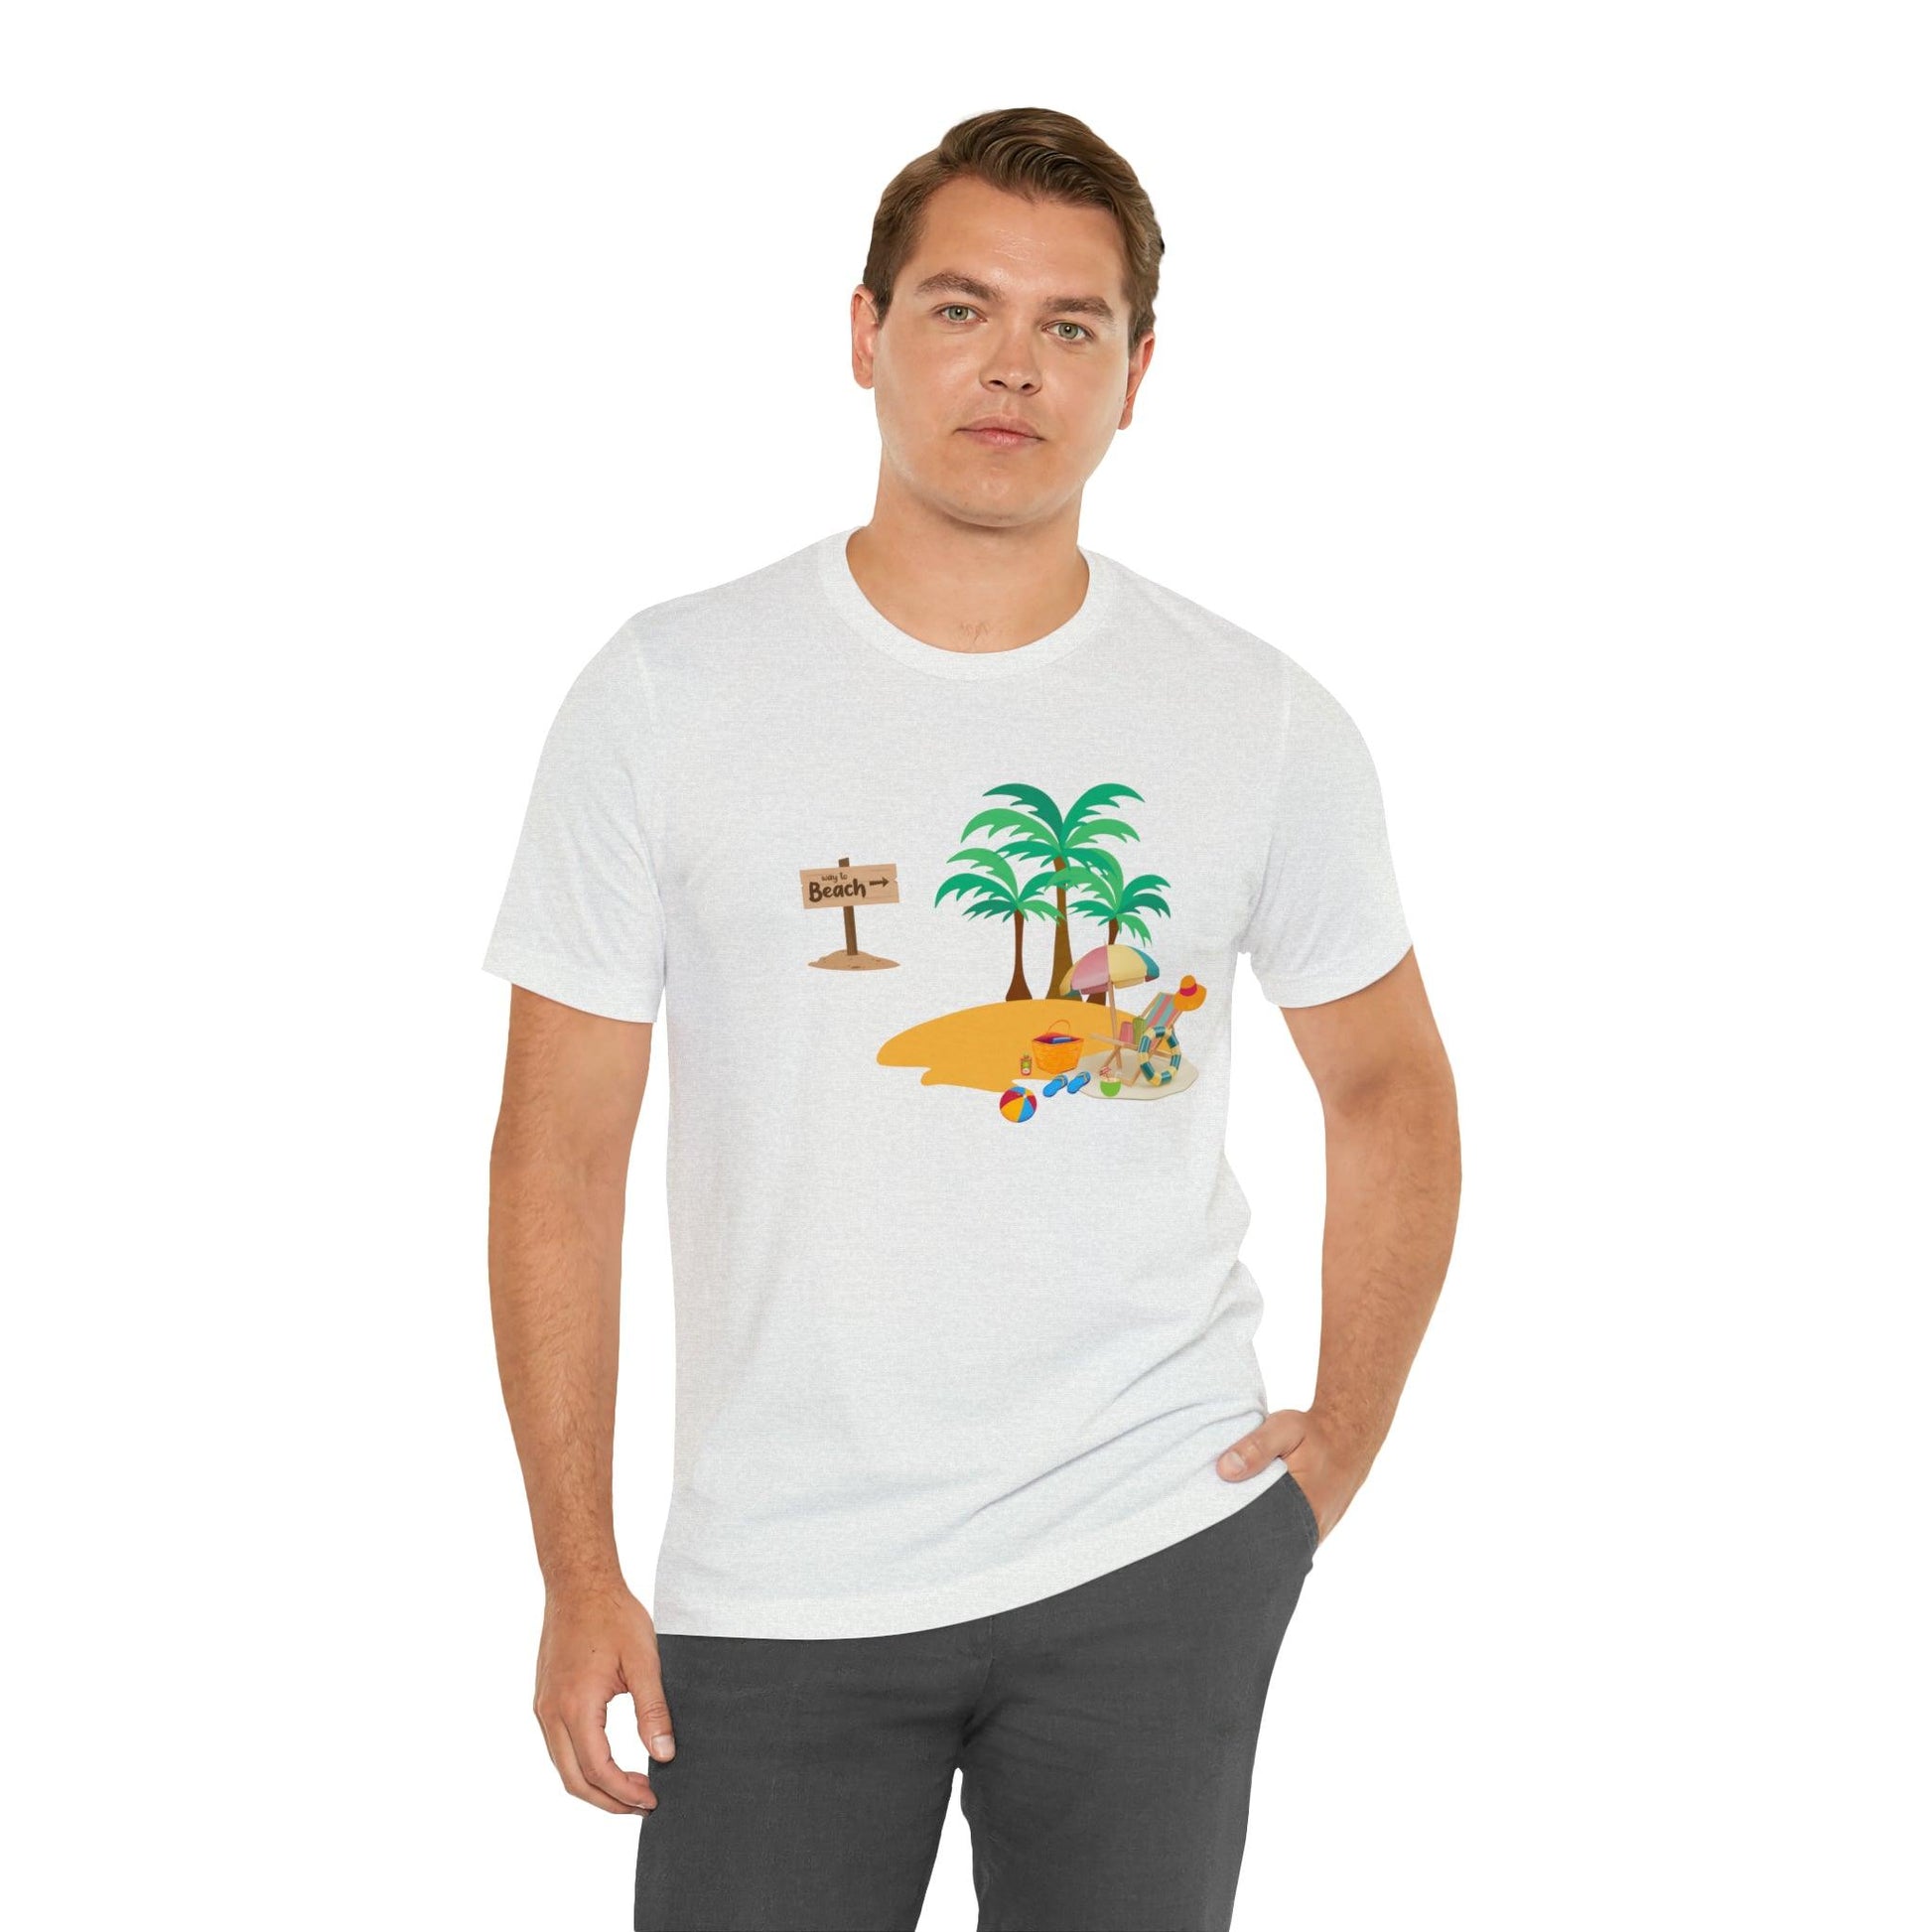 Beach shirt, Beach t-shirt, Summer shirt, Beachwear, Beach fashion, Tropical print, Trendy design, Stylish beach apparel - Giftsmojo